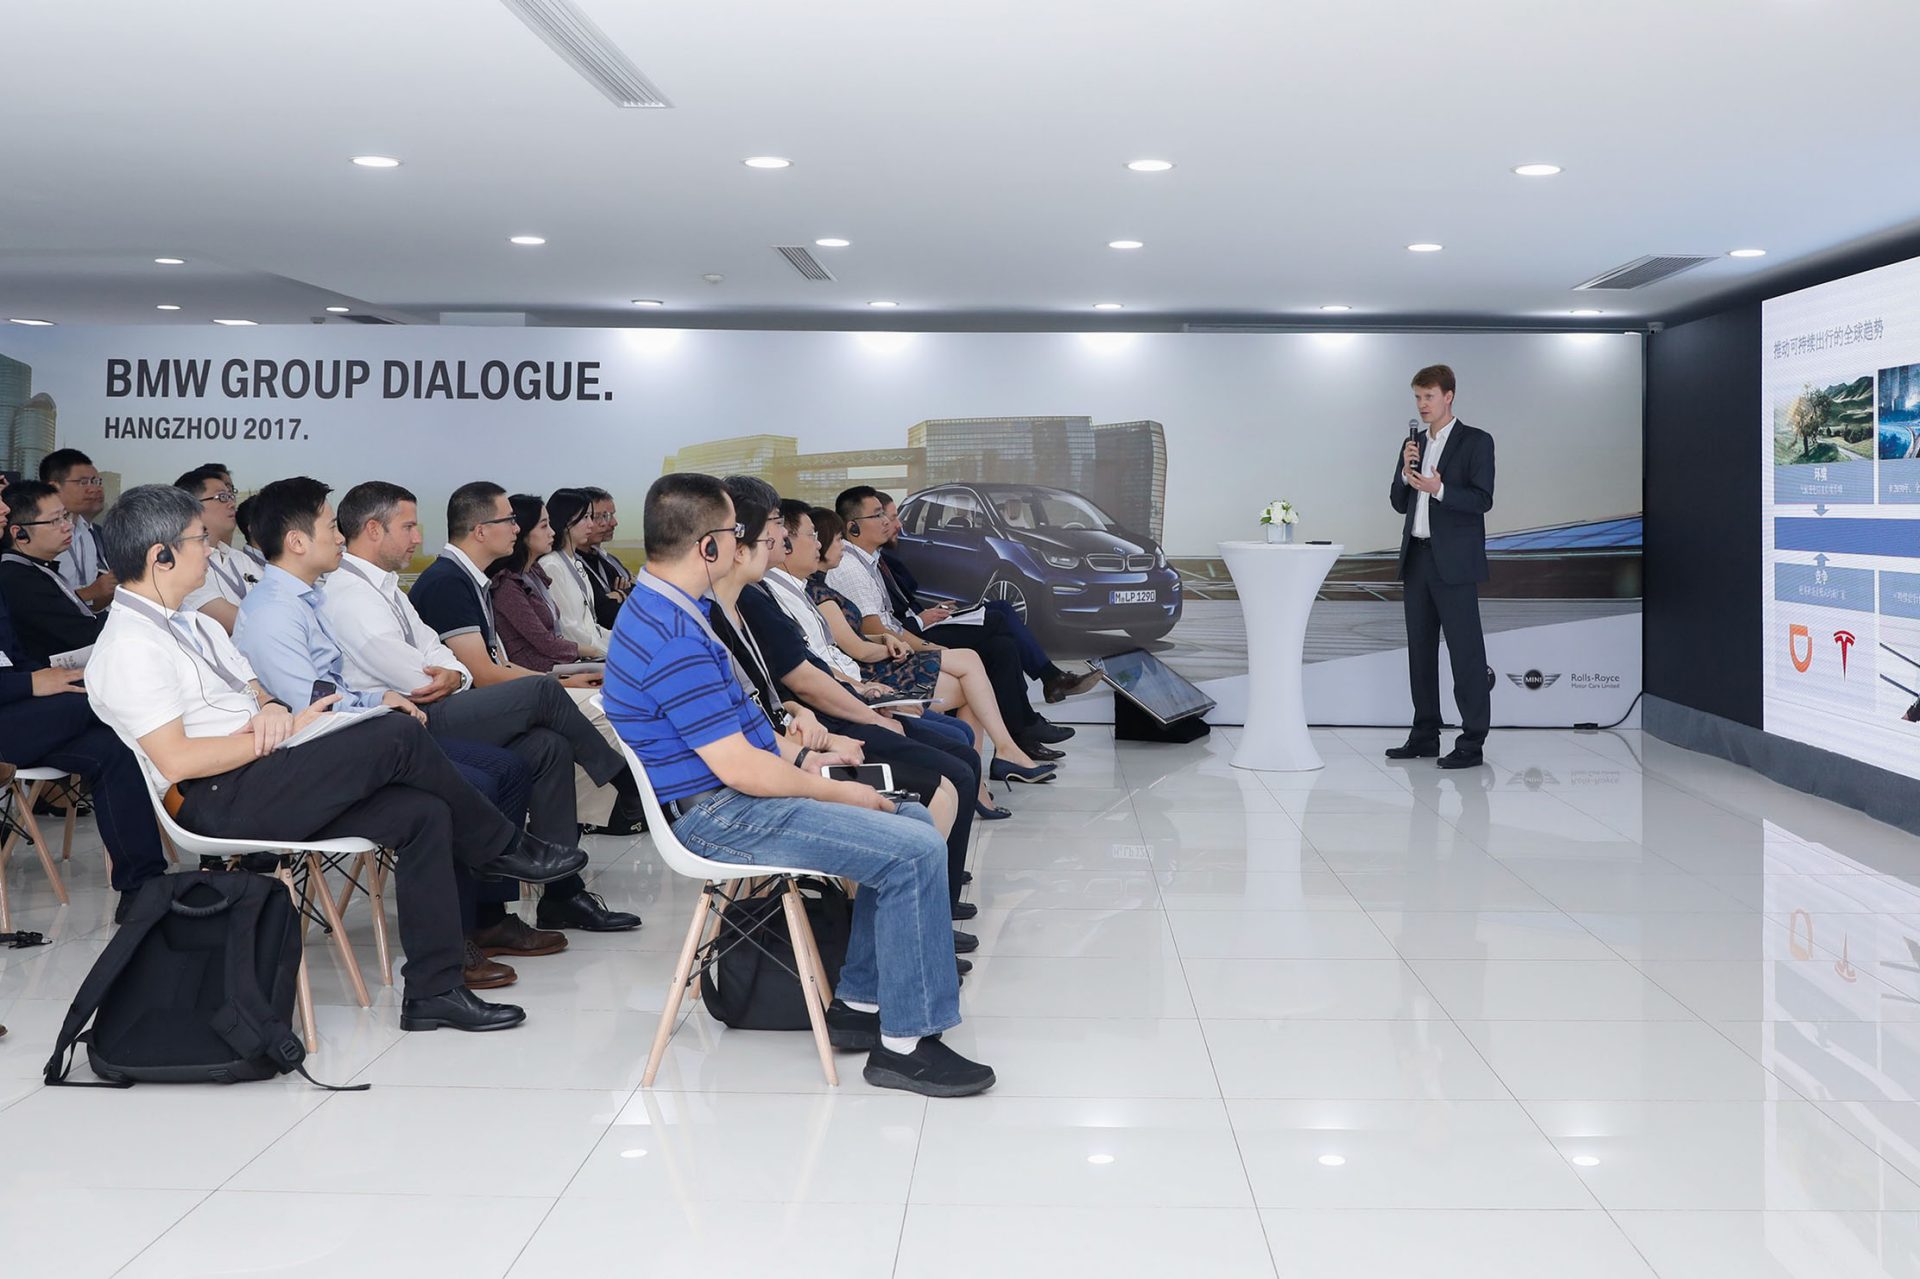 BMW Group Dialogue Hangzou.